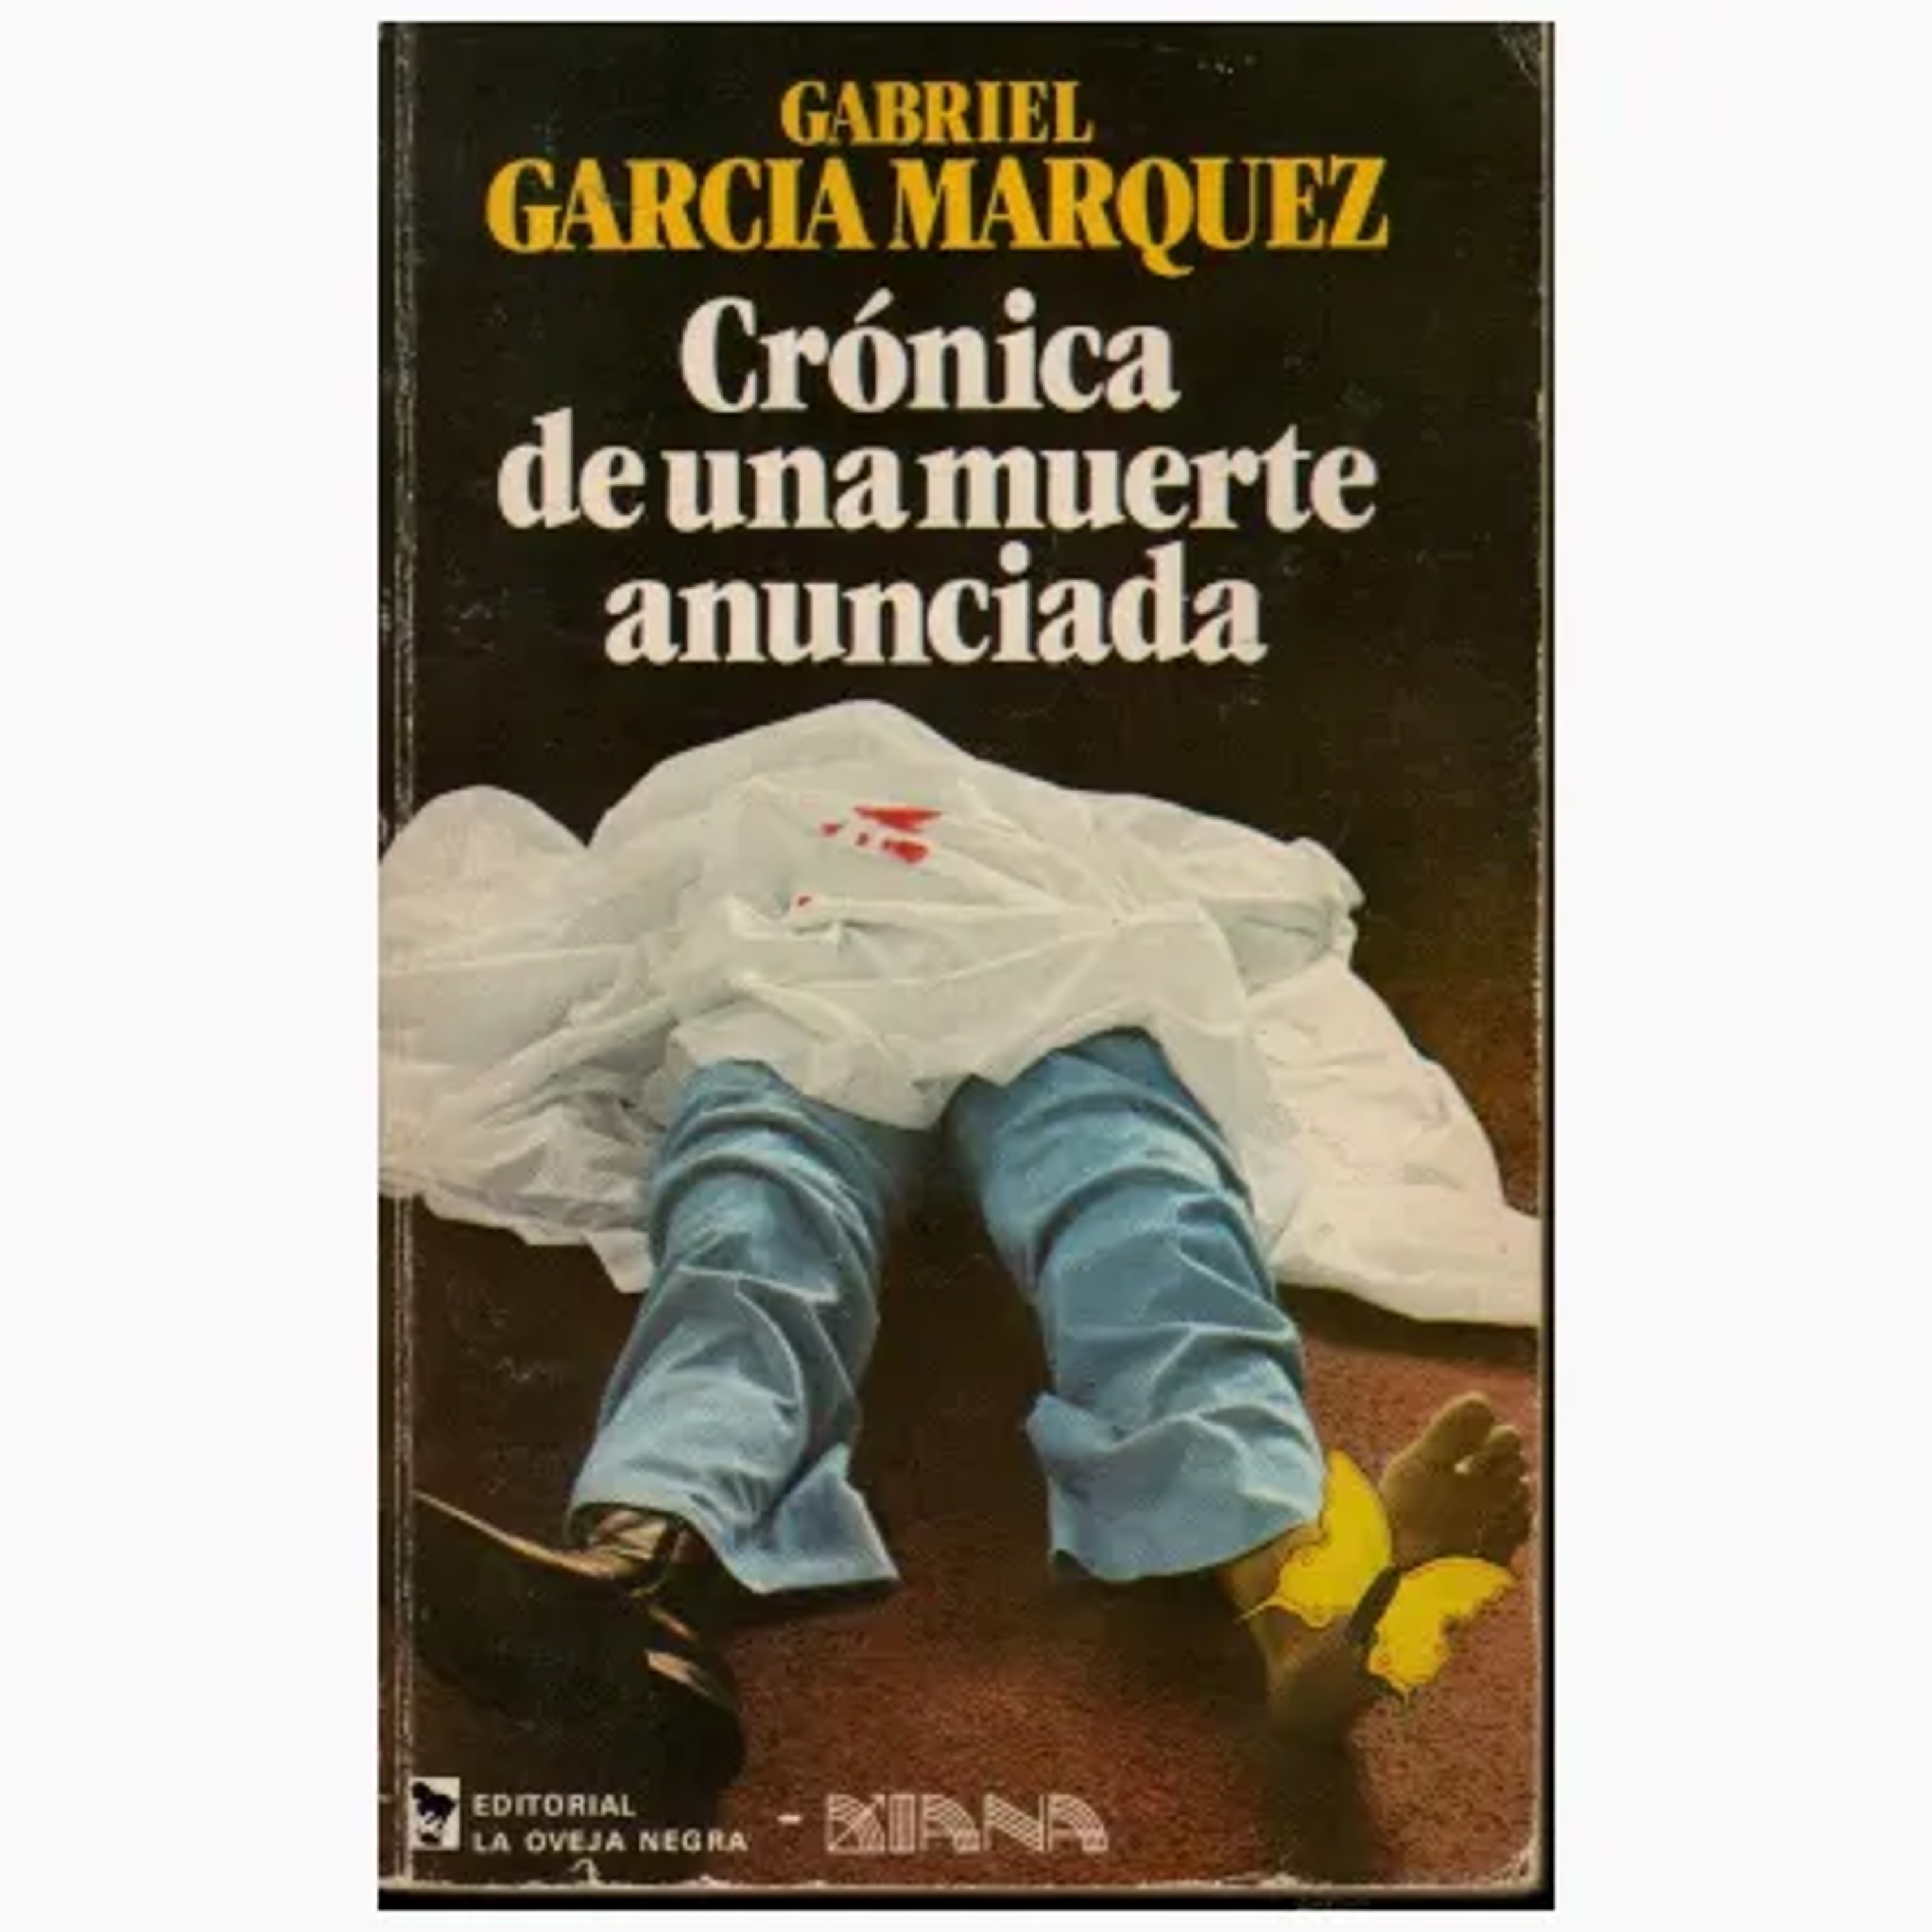 Resumen del libro Crónica de una muerte anunciada de Gabriel García Márquez